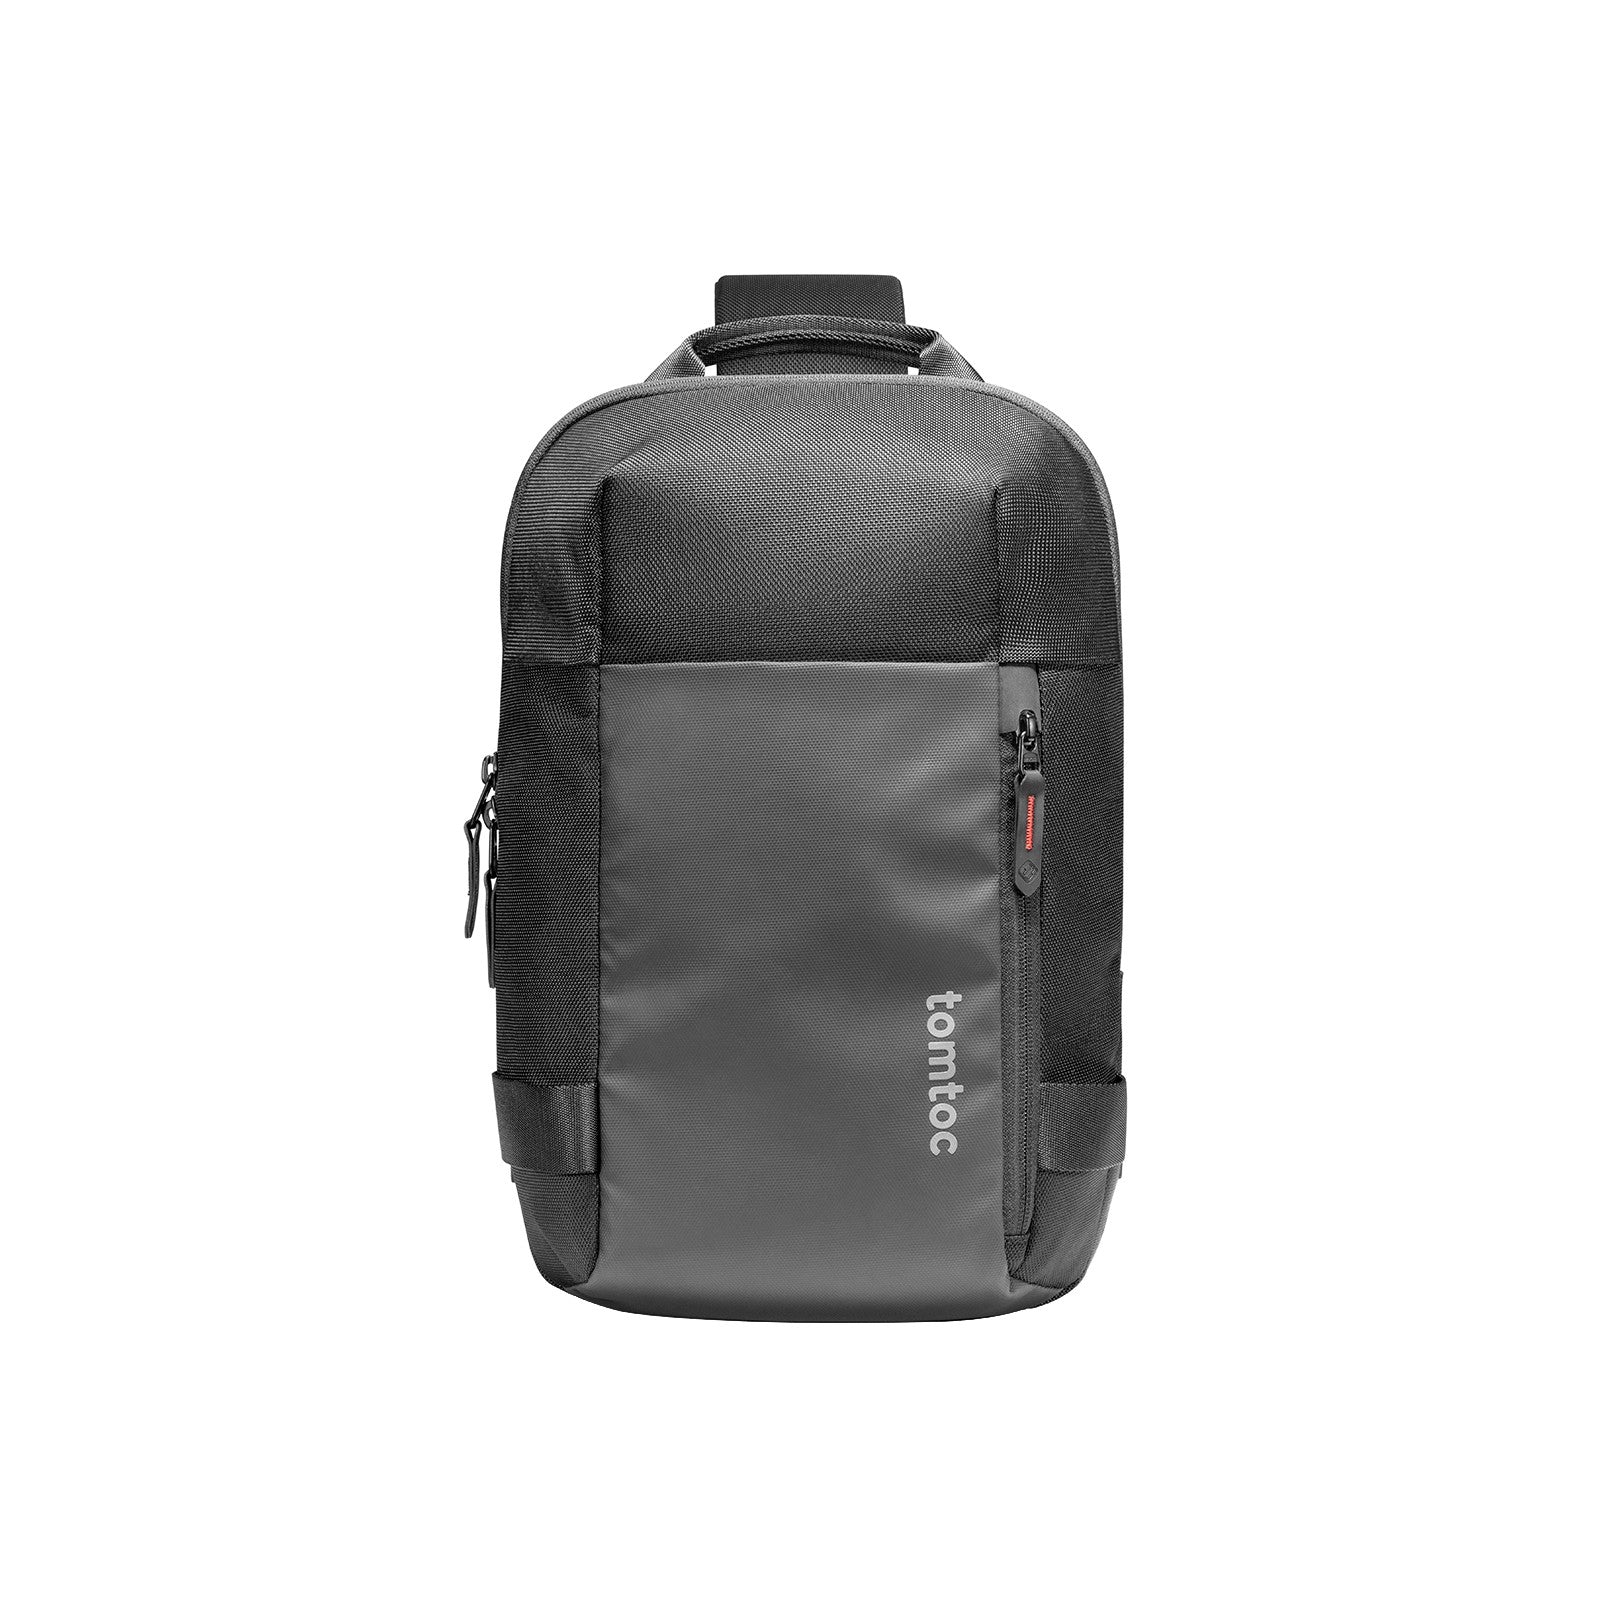 Buy One Strap Backpack for Men Sling Backpack Crossbody Shoulder